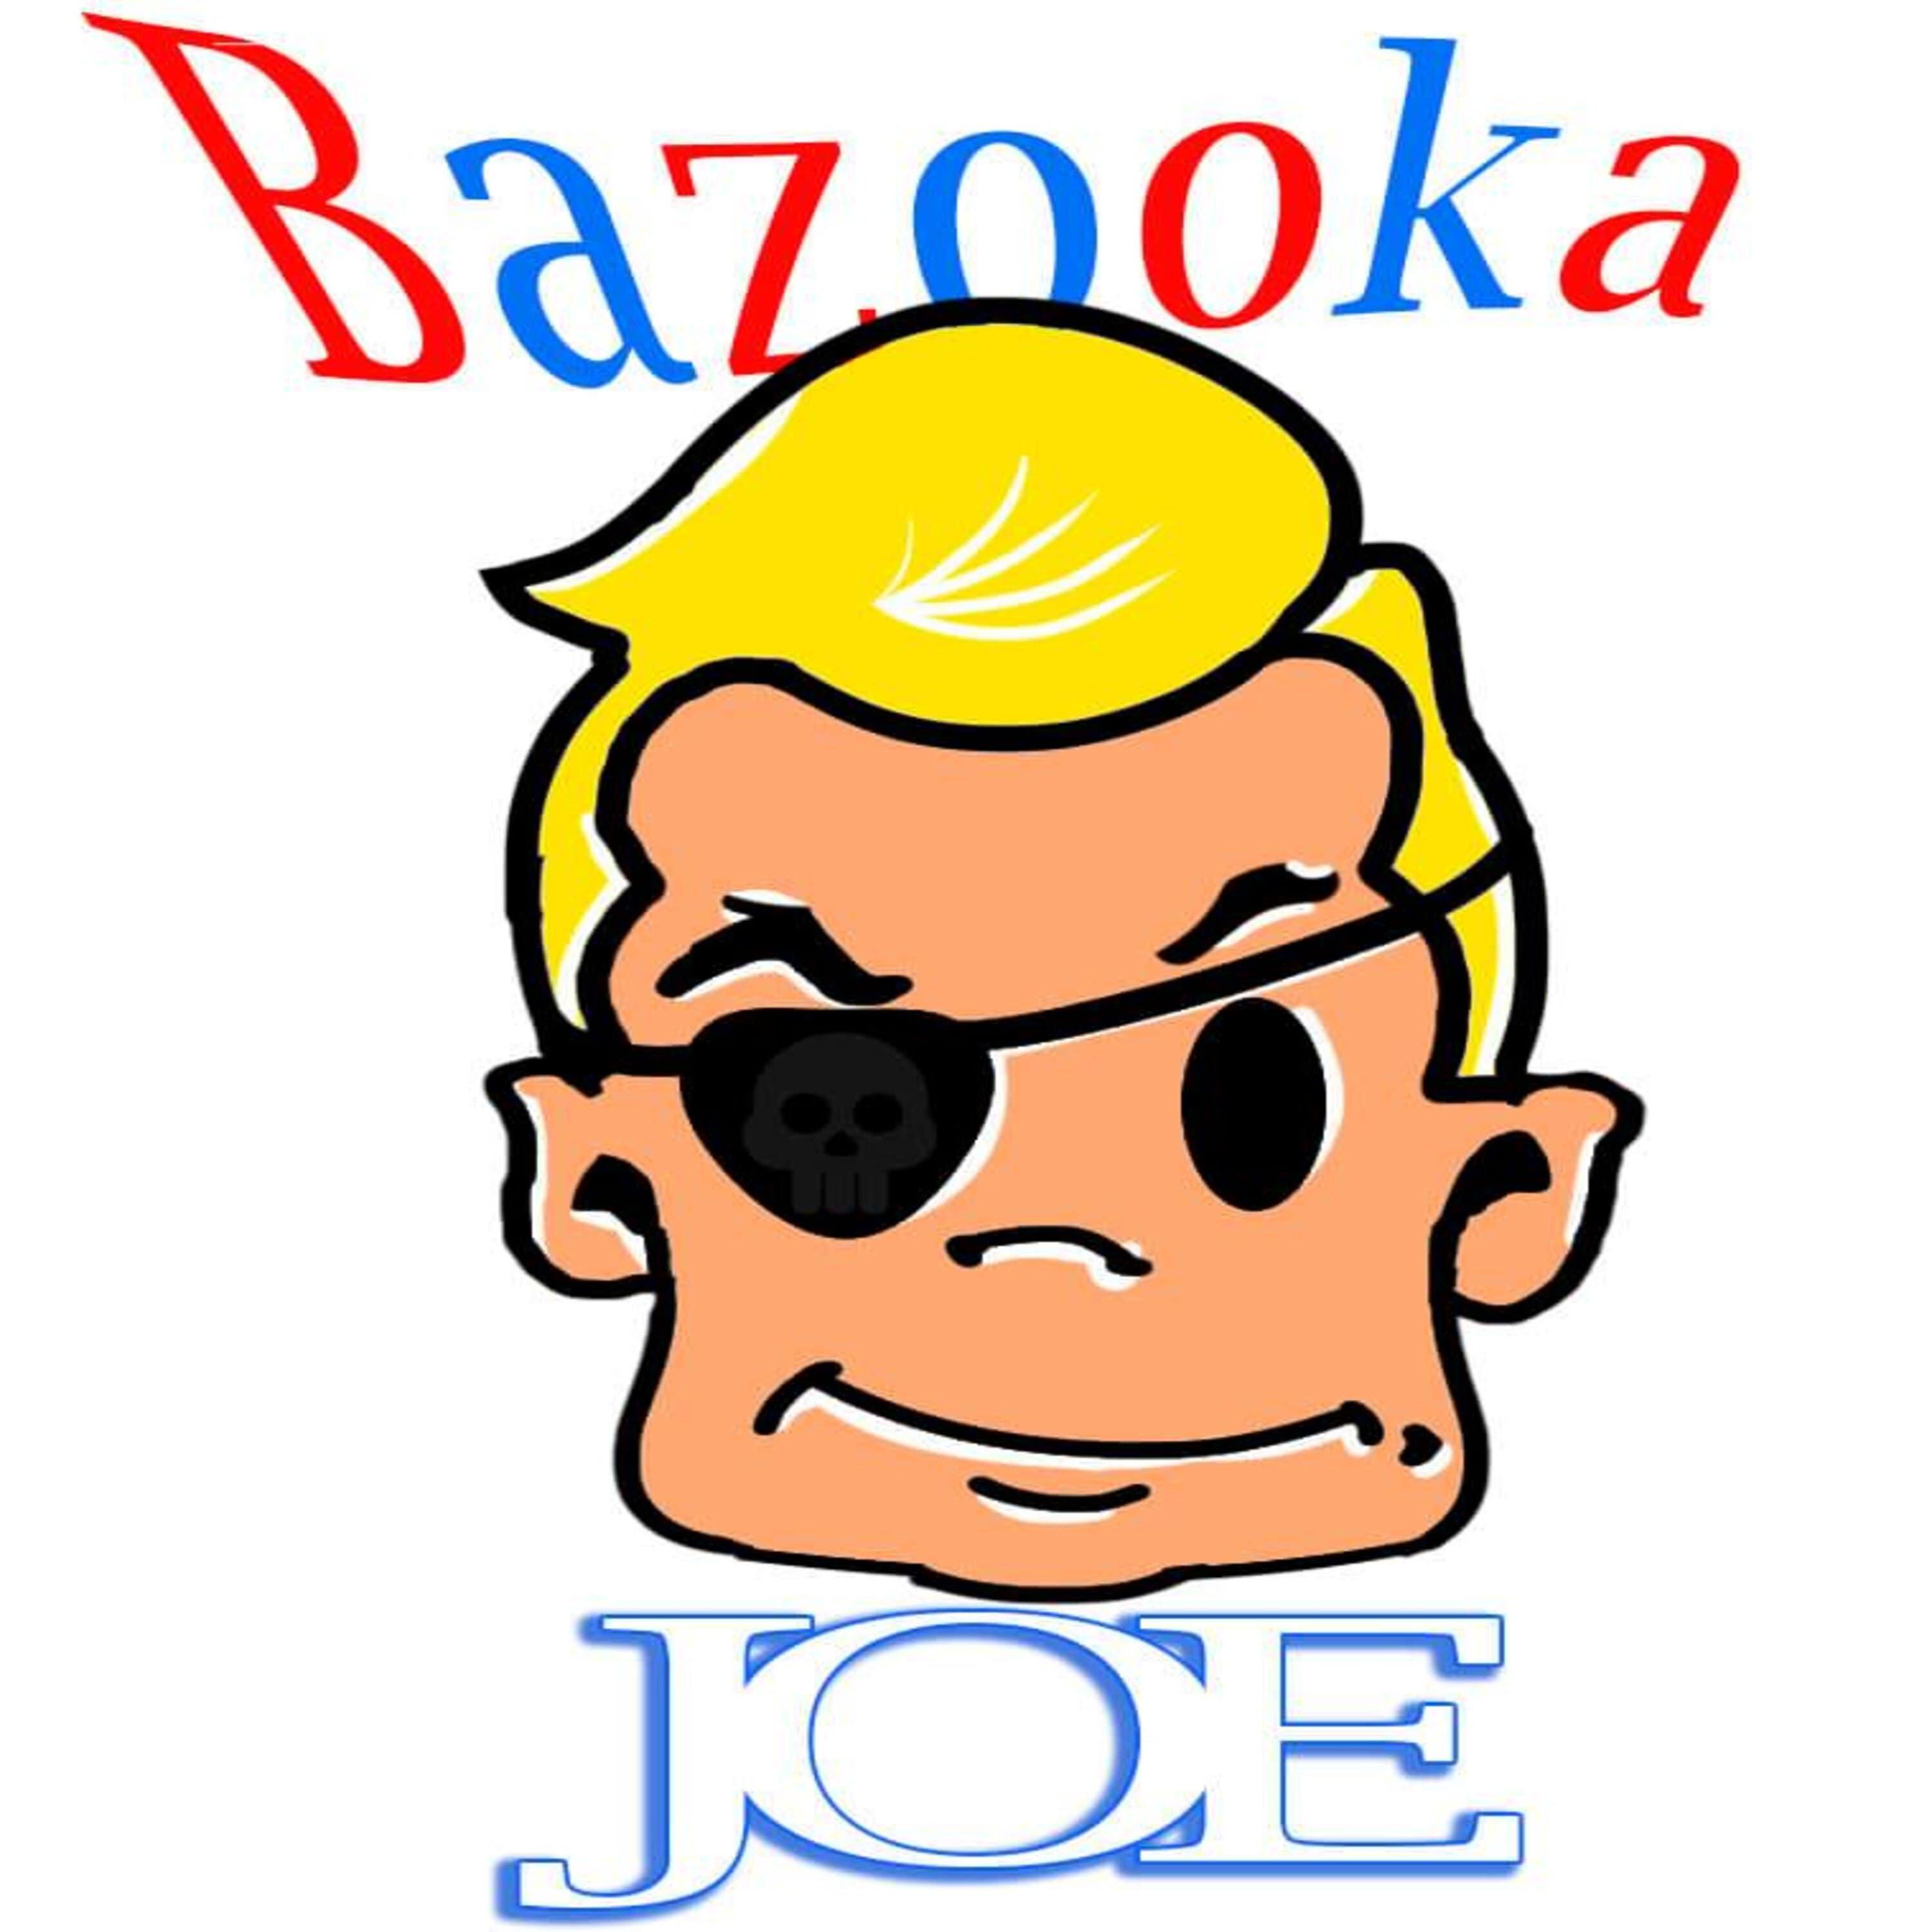 Bazooka Joe - Check Smile & Steal (Live)